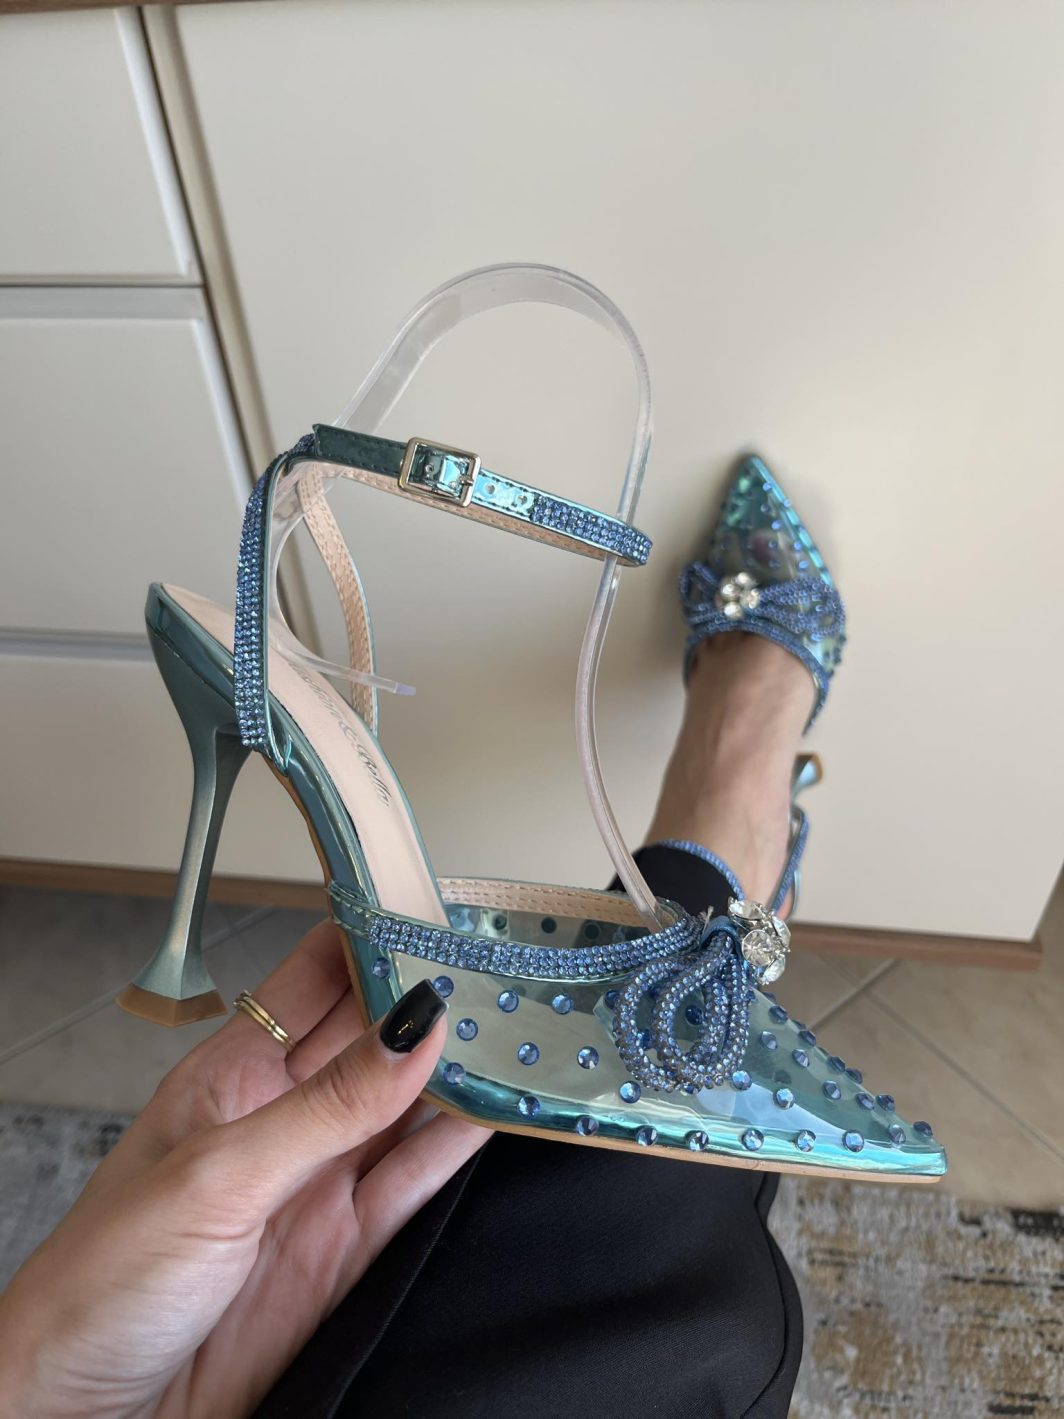 Sapato Cinderela - Azul